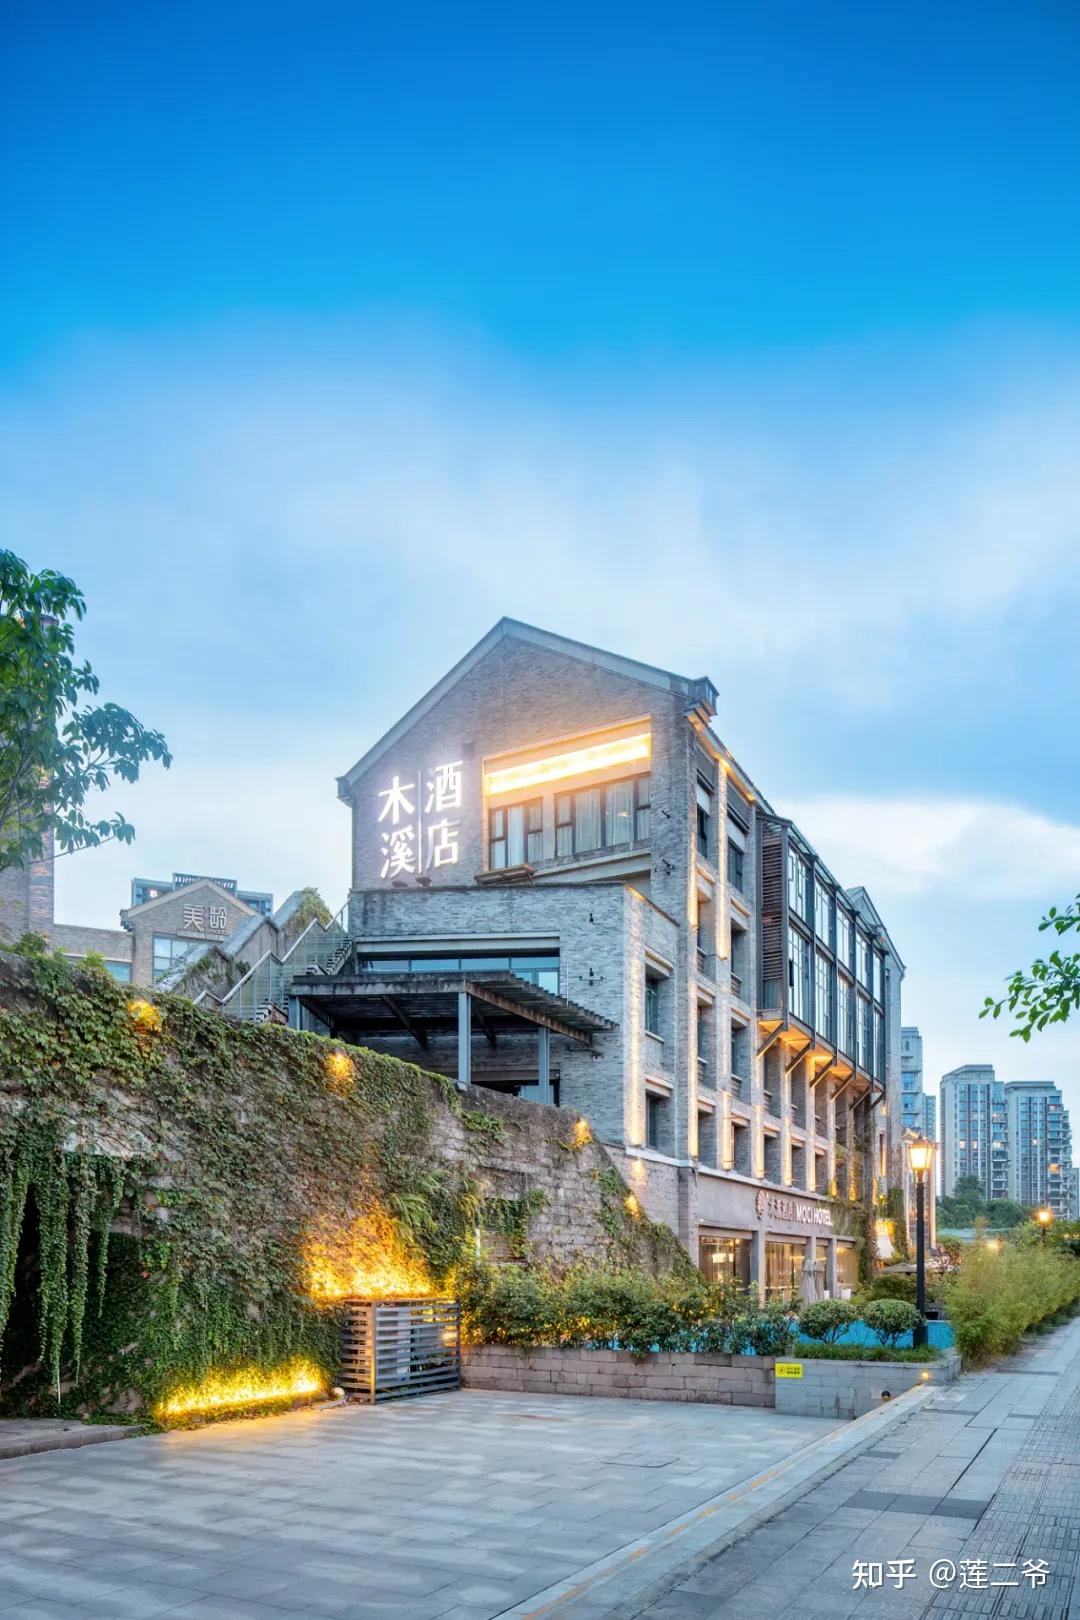 杭州西溪悦榕庄 -上海市文旅推广网-上海市文化和旅游局 提供专业文化和旅游及会展信息资讯